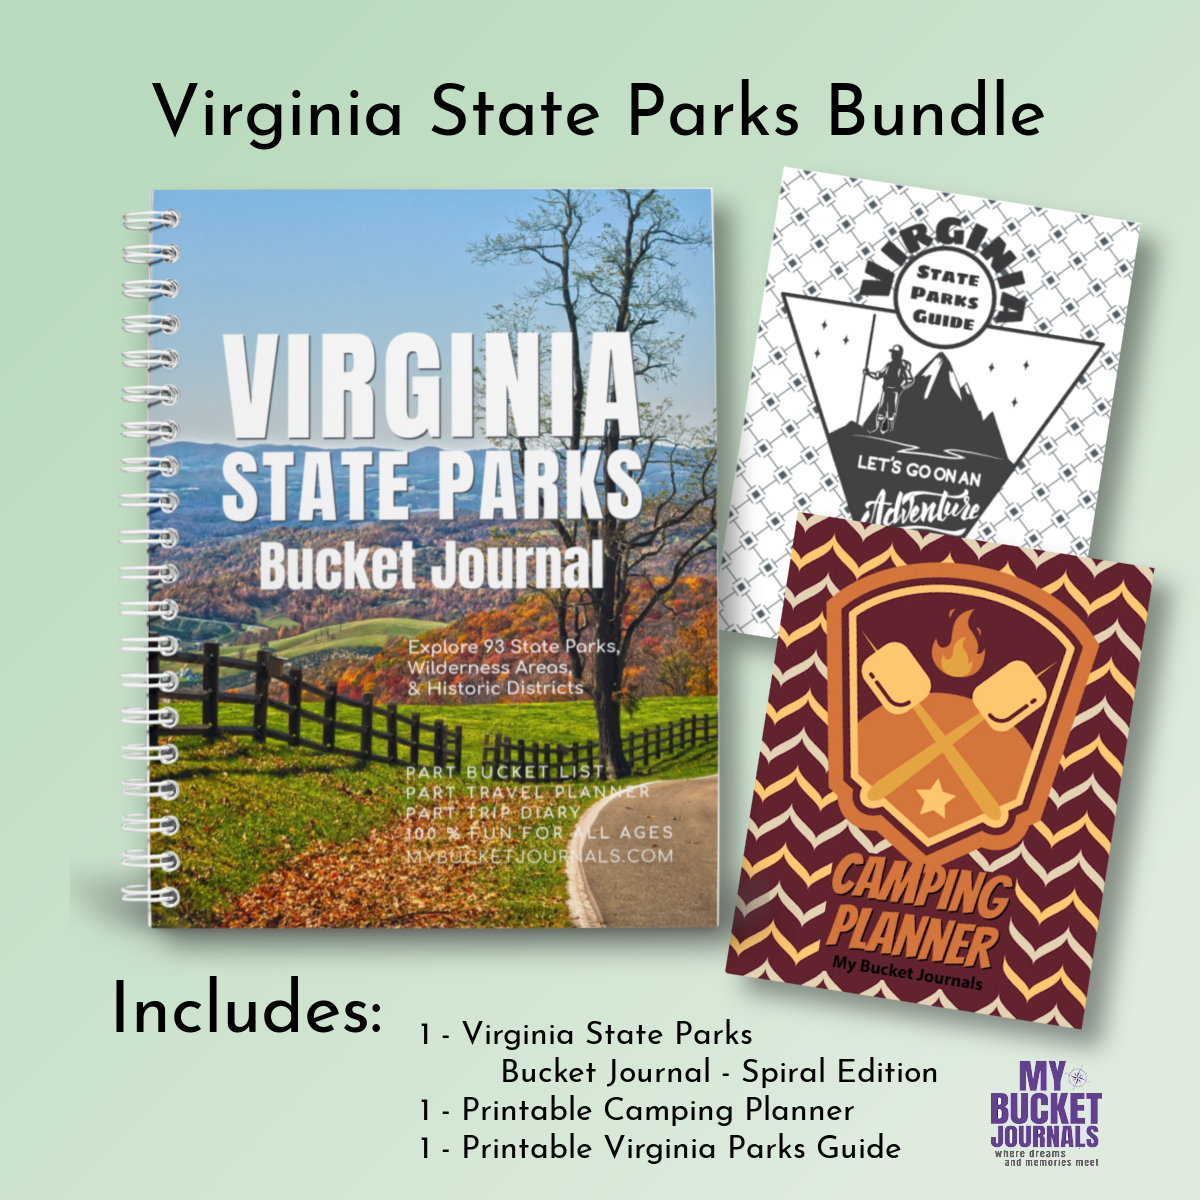 Virginia State Parks Bucket Journal - Spiral